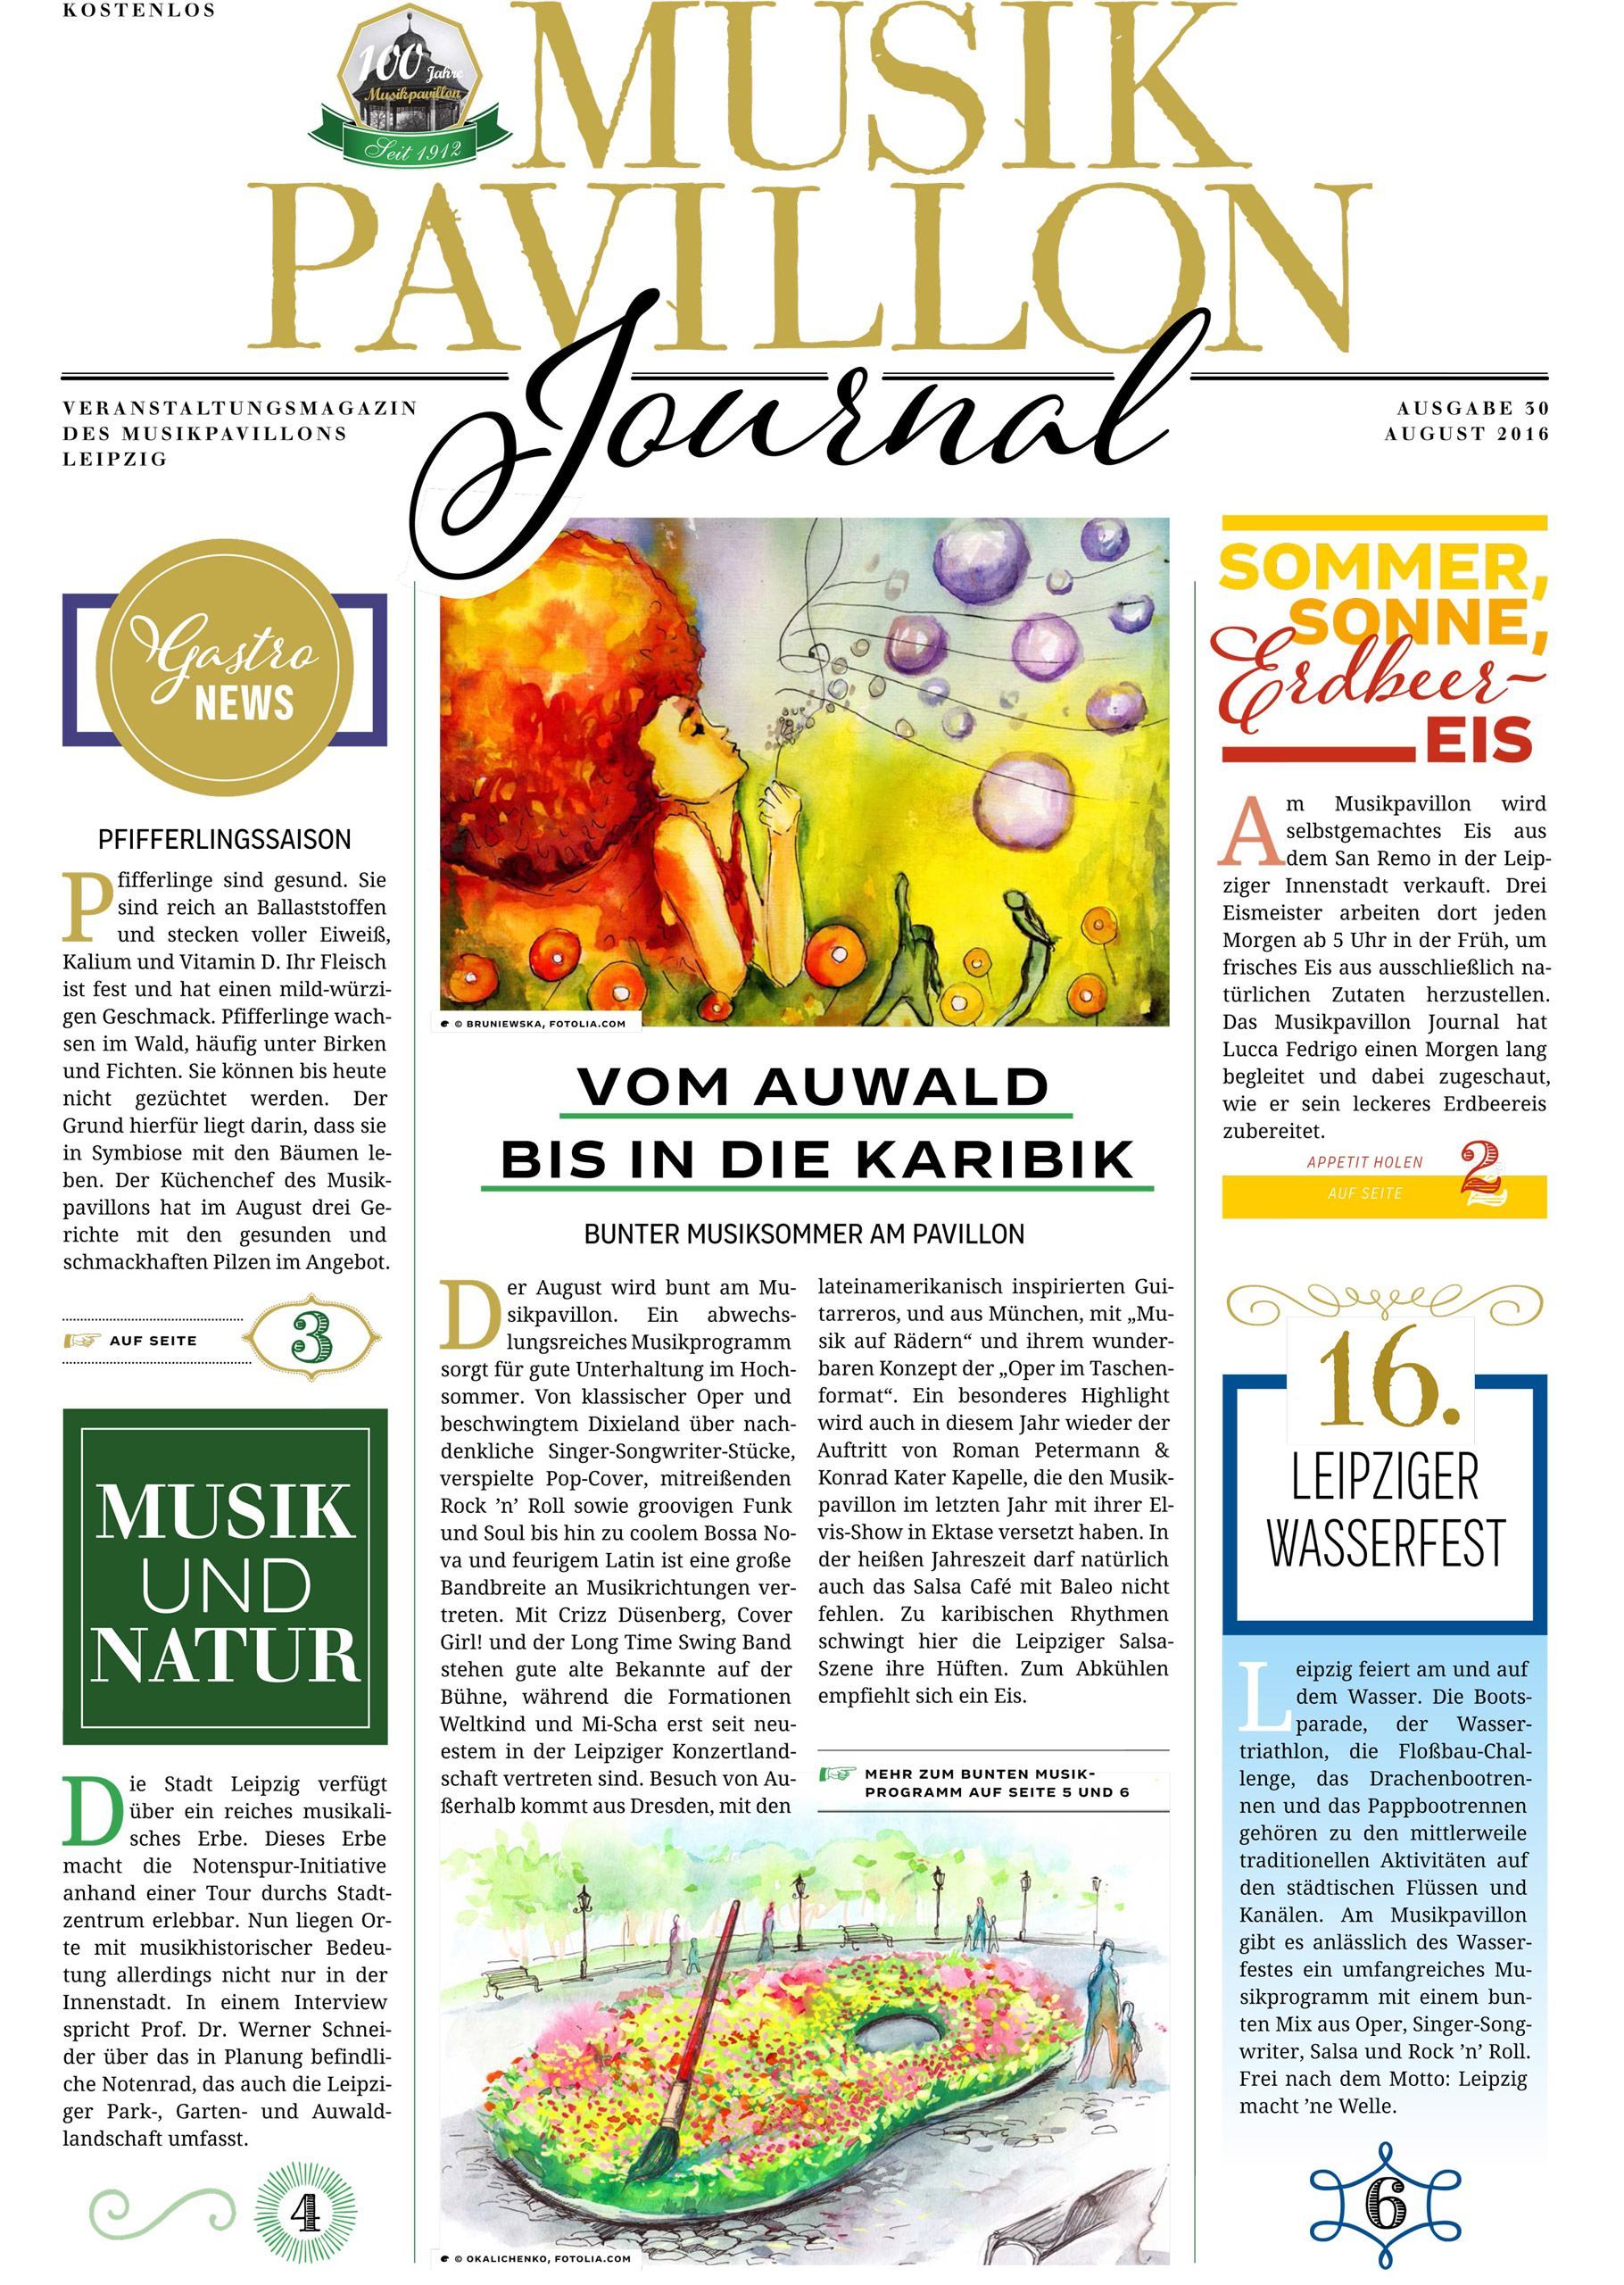 Titelseite „Vom Auwald bis in die Karibik“ des Musikpavillon Journal Nr. 30 aus dem Jahre 2016